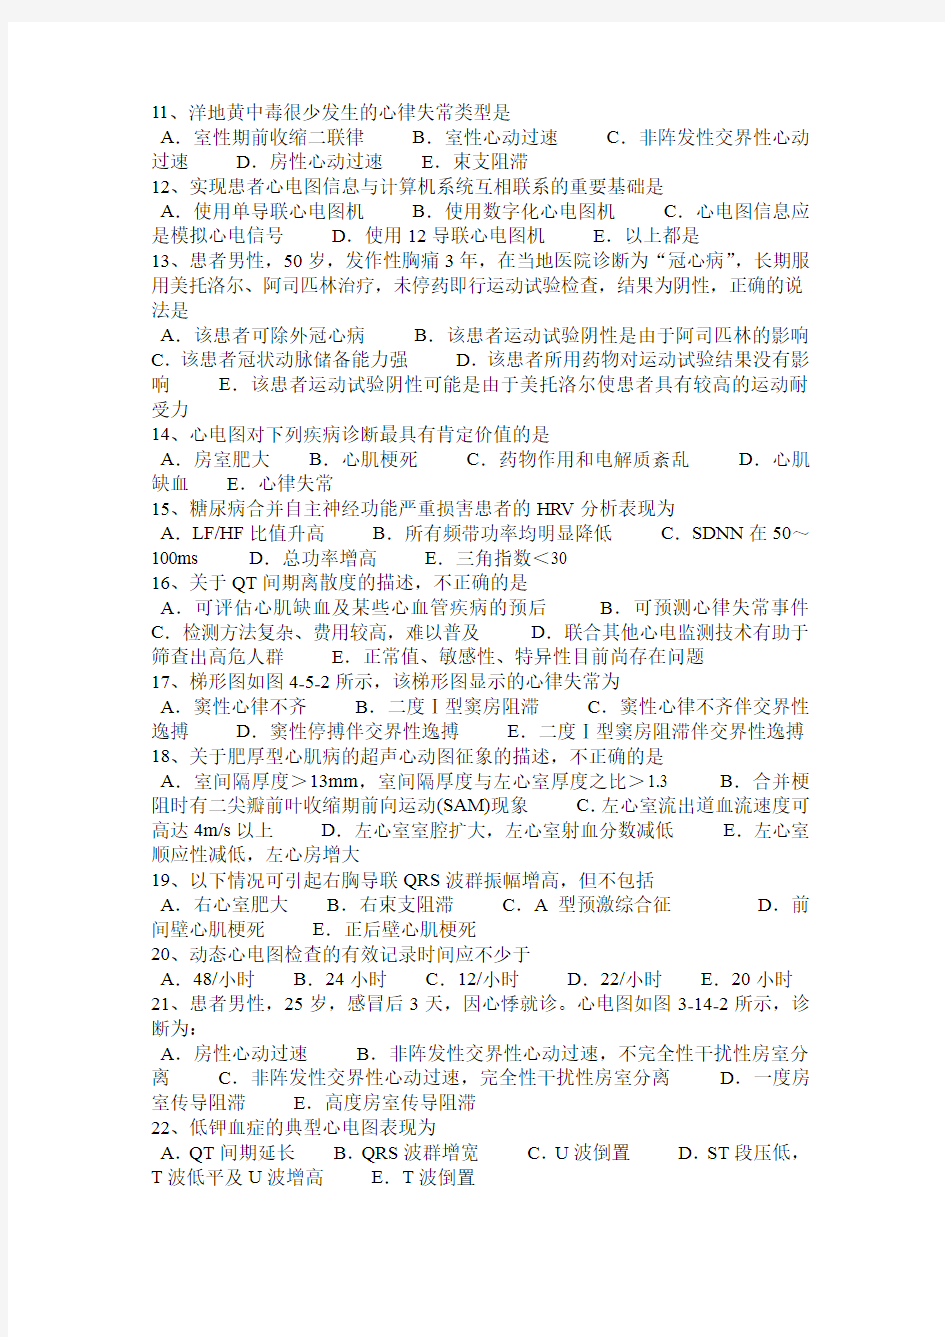 2017年上海心电图技术(中级)专业知识考试试题